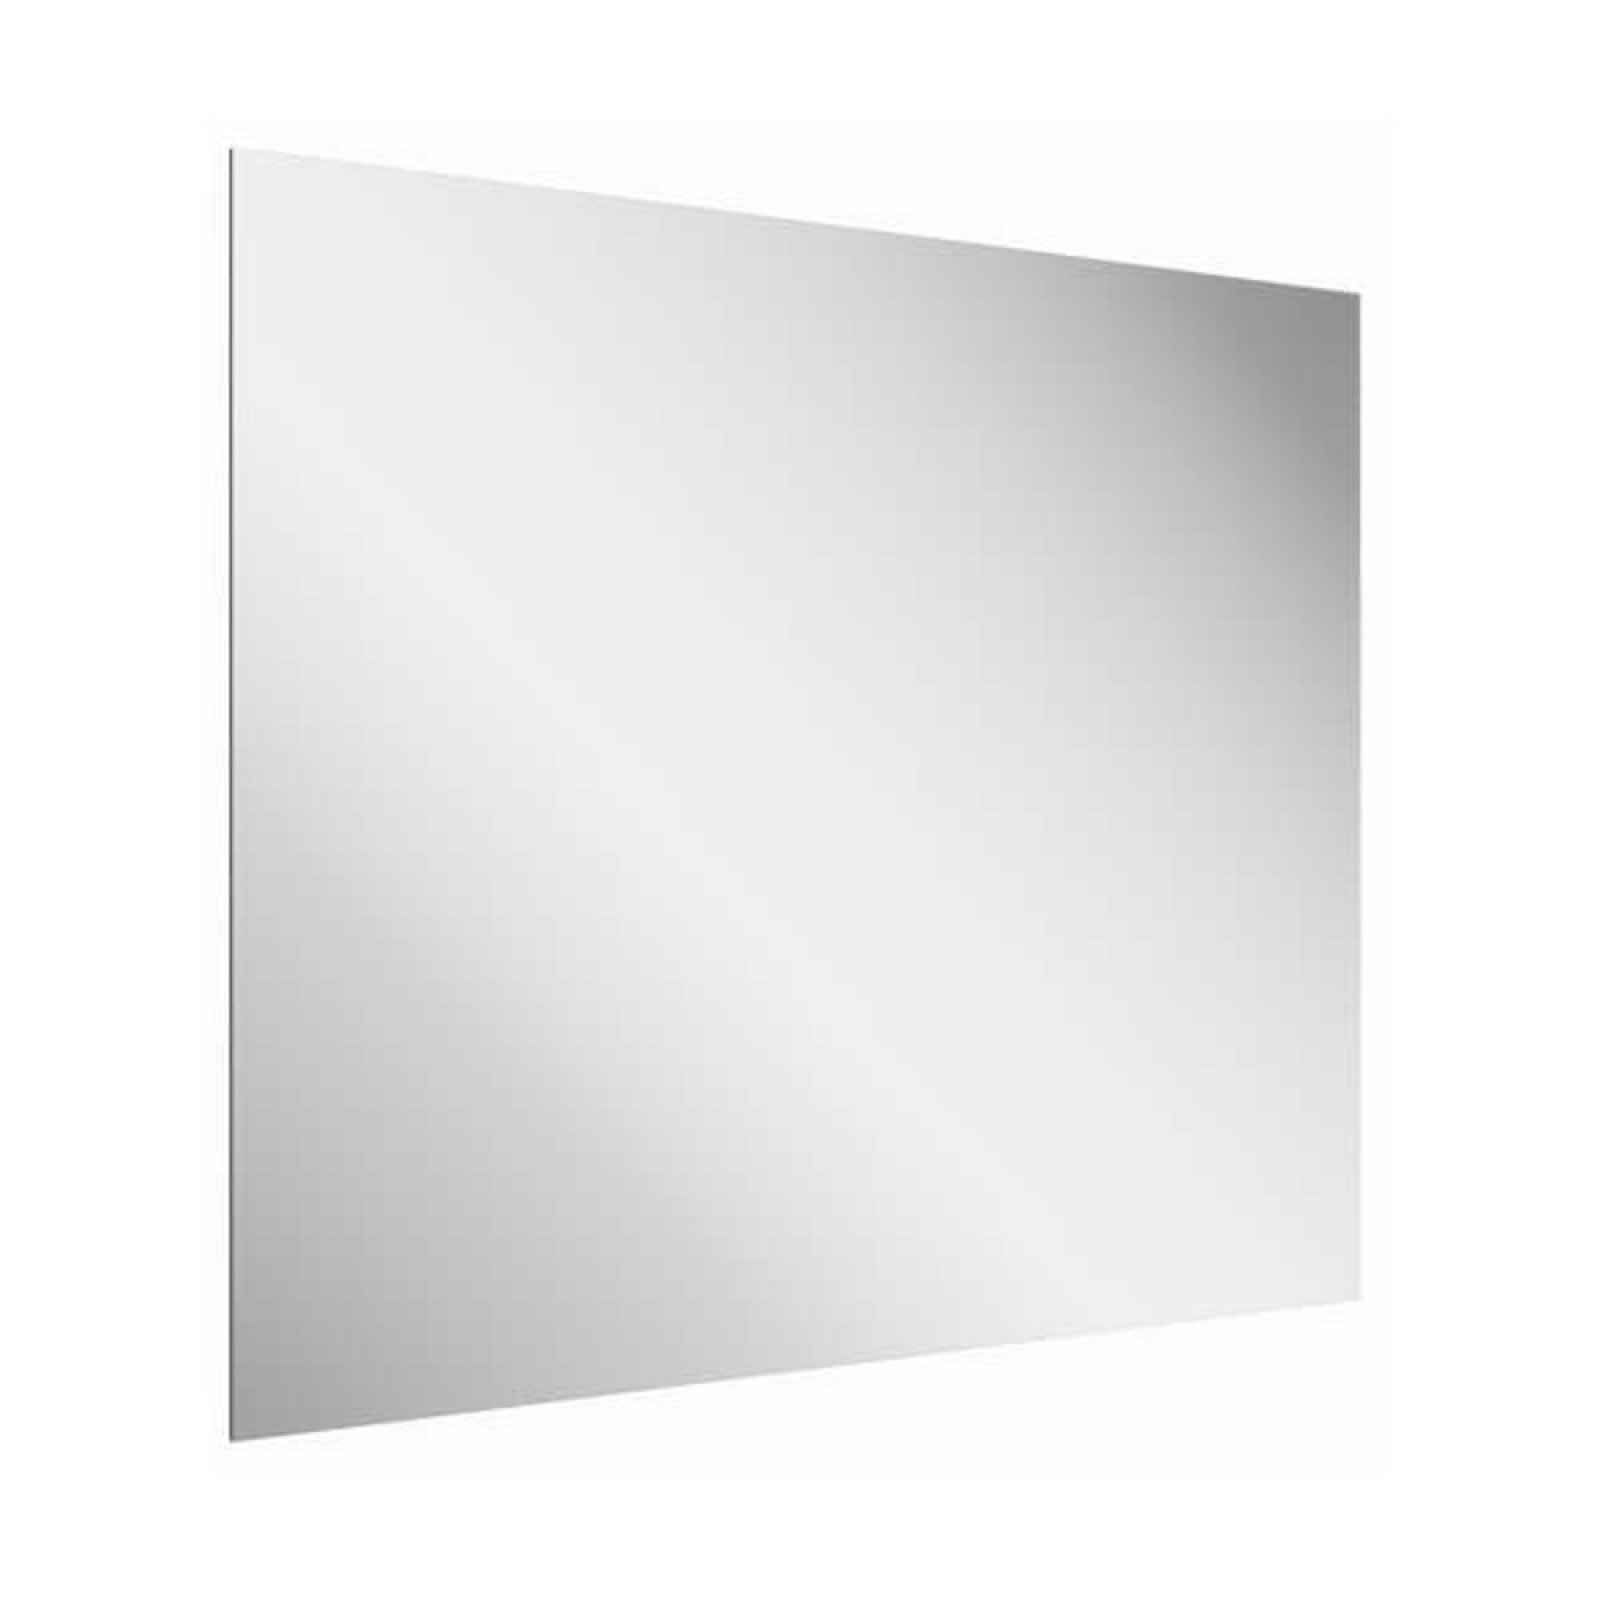 Zrcadlo bez vypínače Ravak Oblong 70x70 cm transparent X000001563